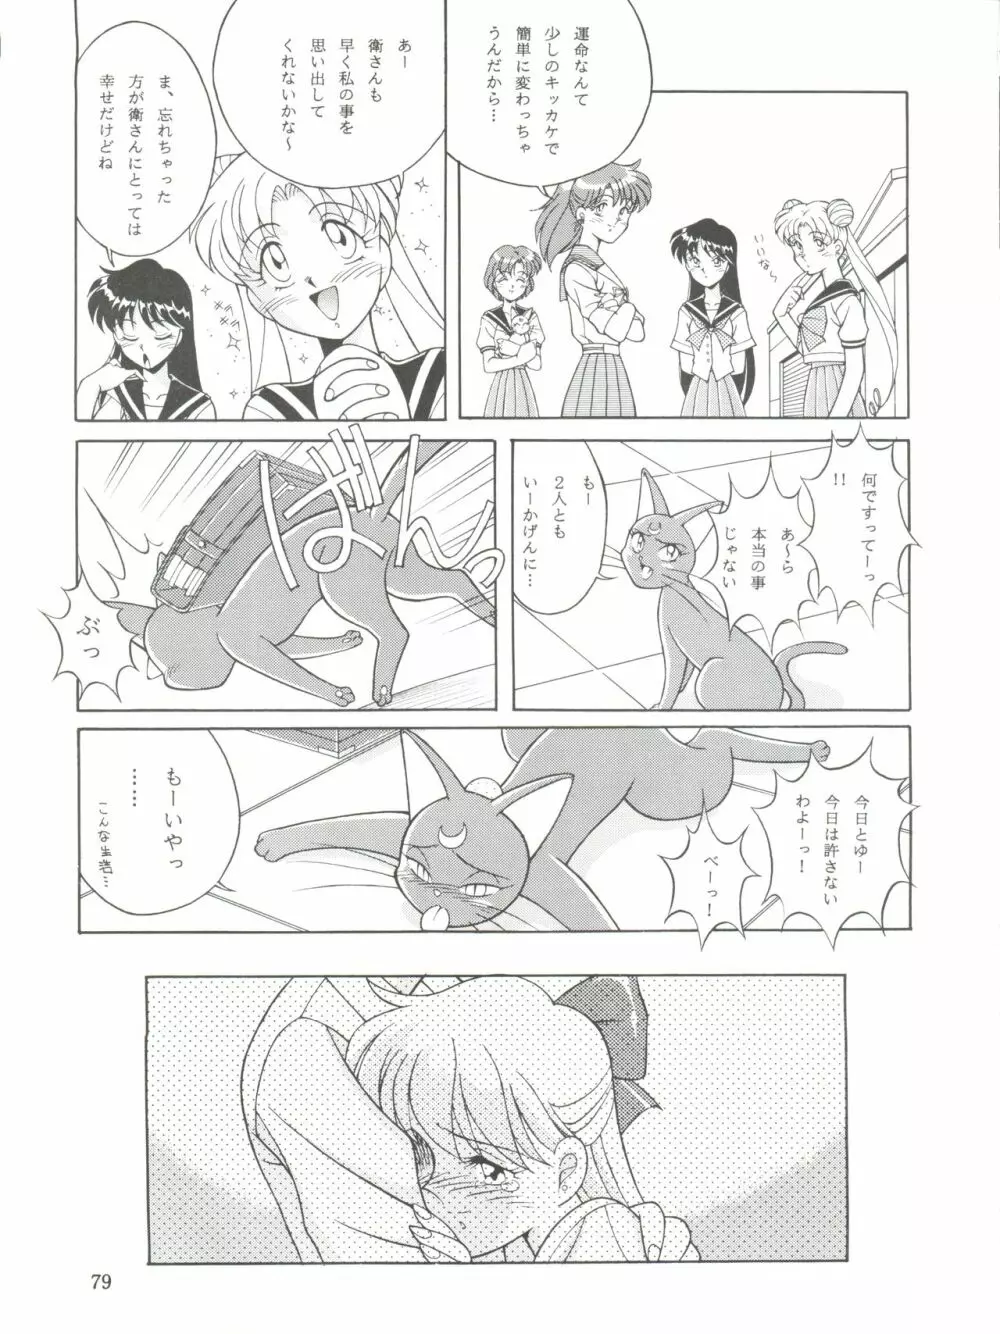 NANIWA-YA FINAL DRESS UP! - page79